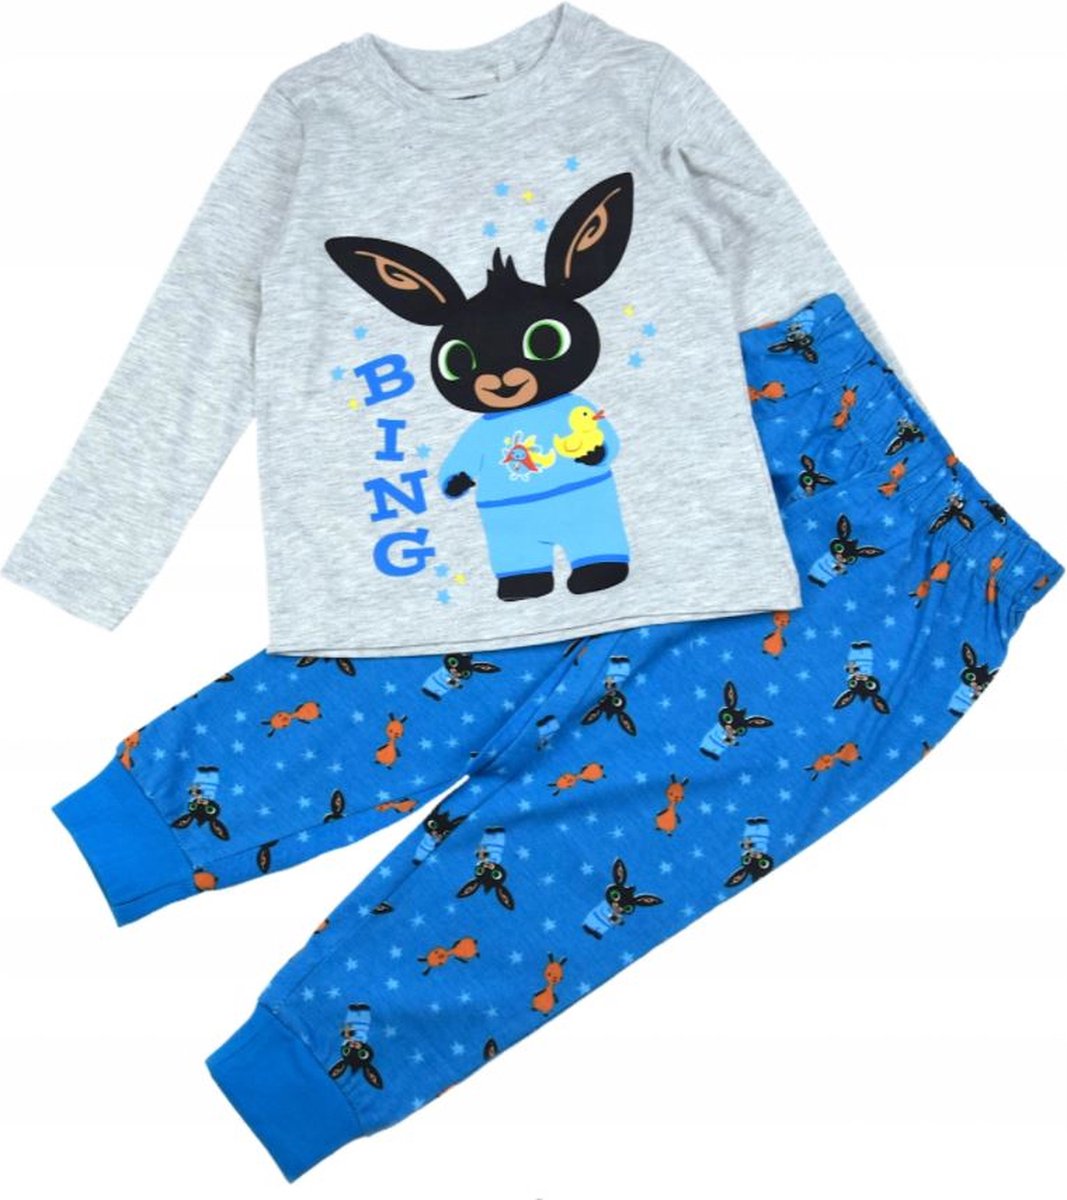 Bing Bunny pyjama - maat 116 - Bing pyjamaset - grijs met blauw